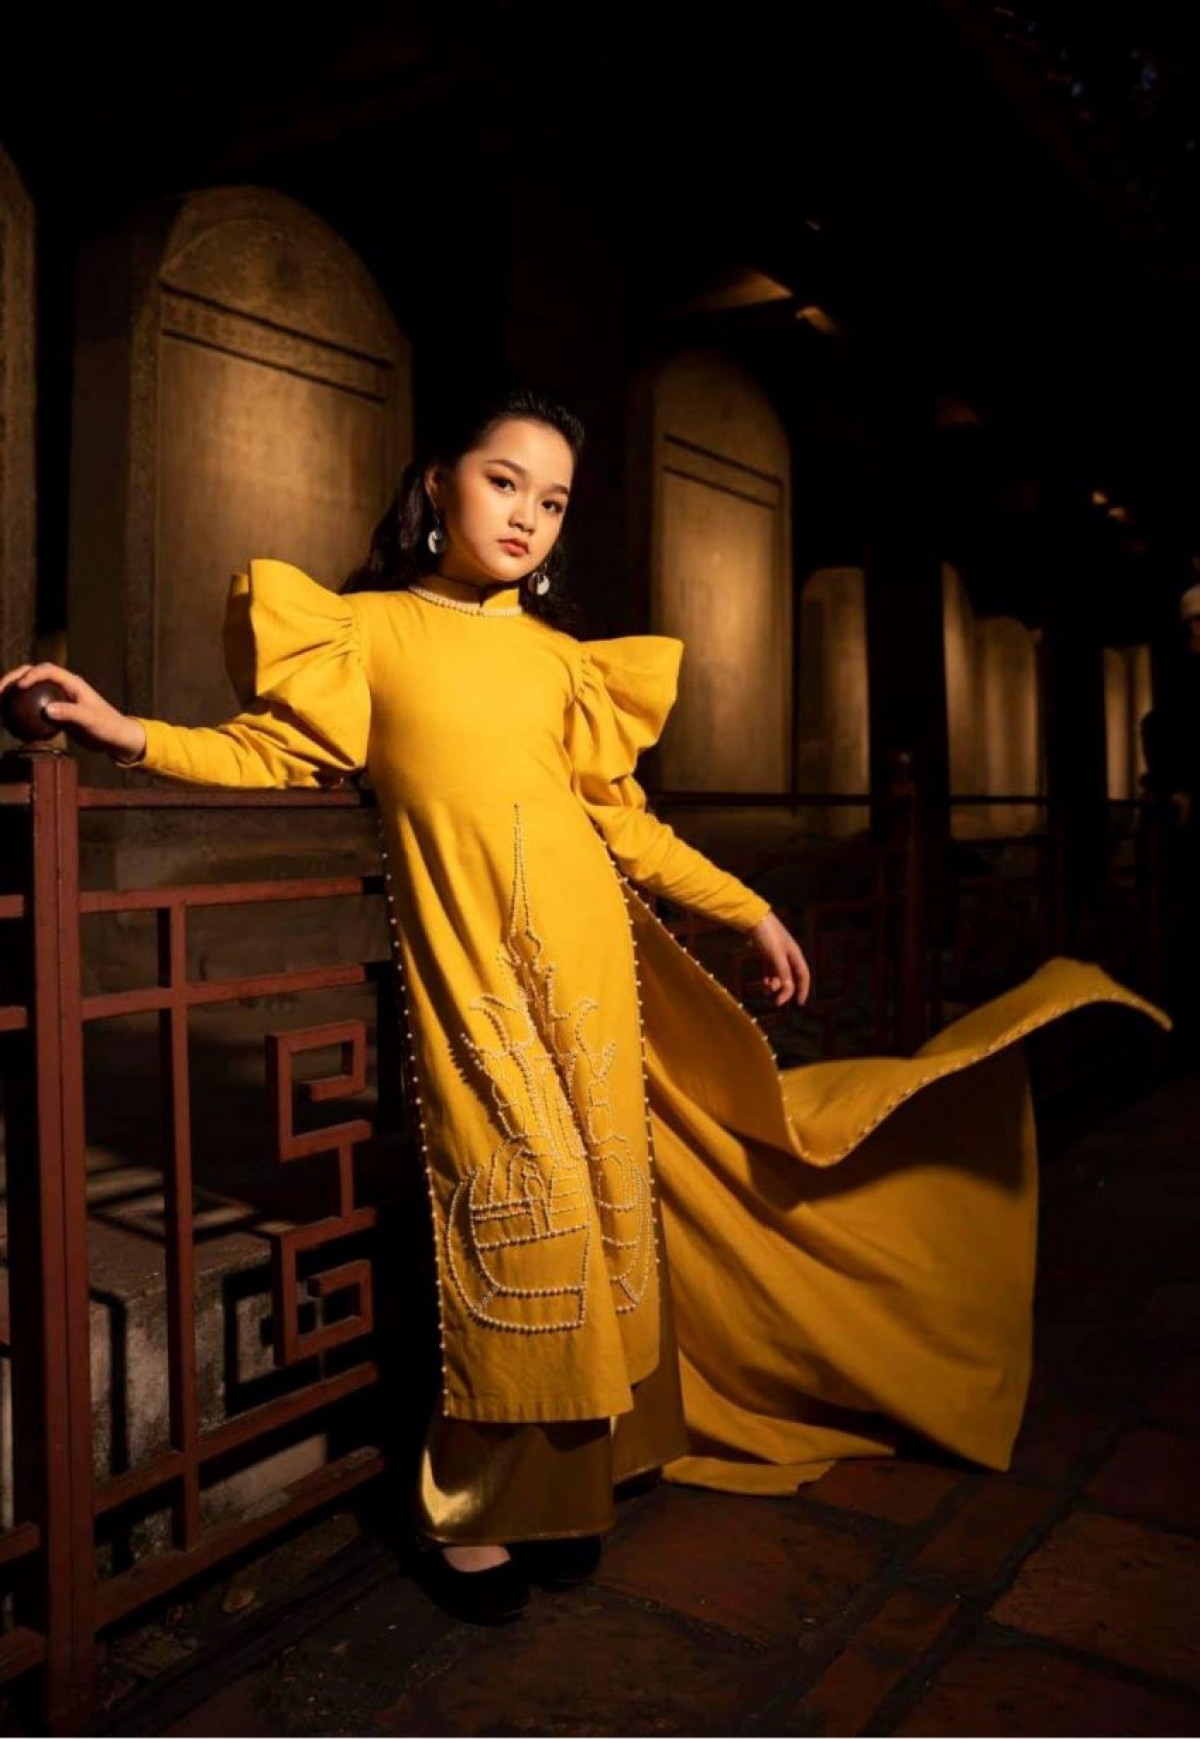 Từ cô con gái ngoan của cha mẹ đến gương mặt nổi trội đầy tiềm năng của làng người mẫu Việt Nam - Jenny Bảo Vy